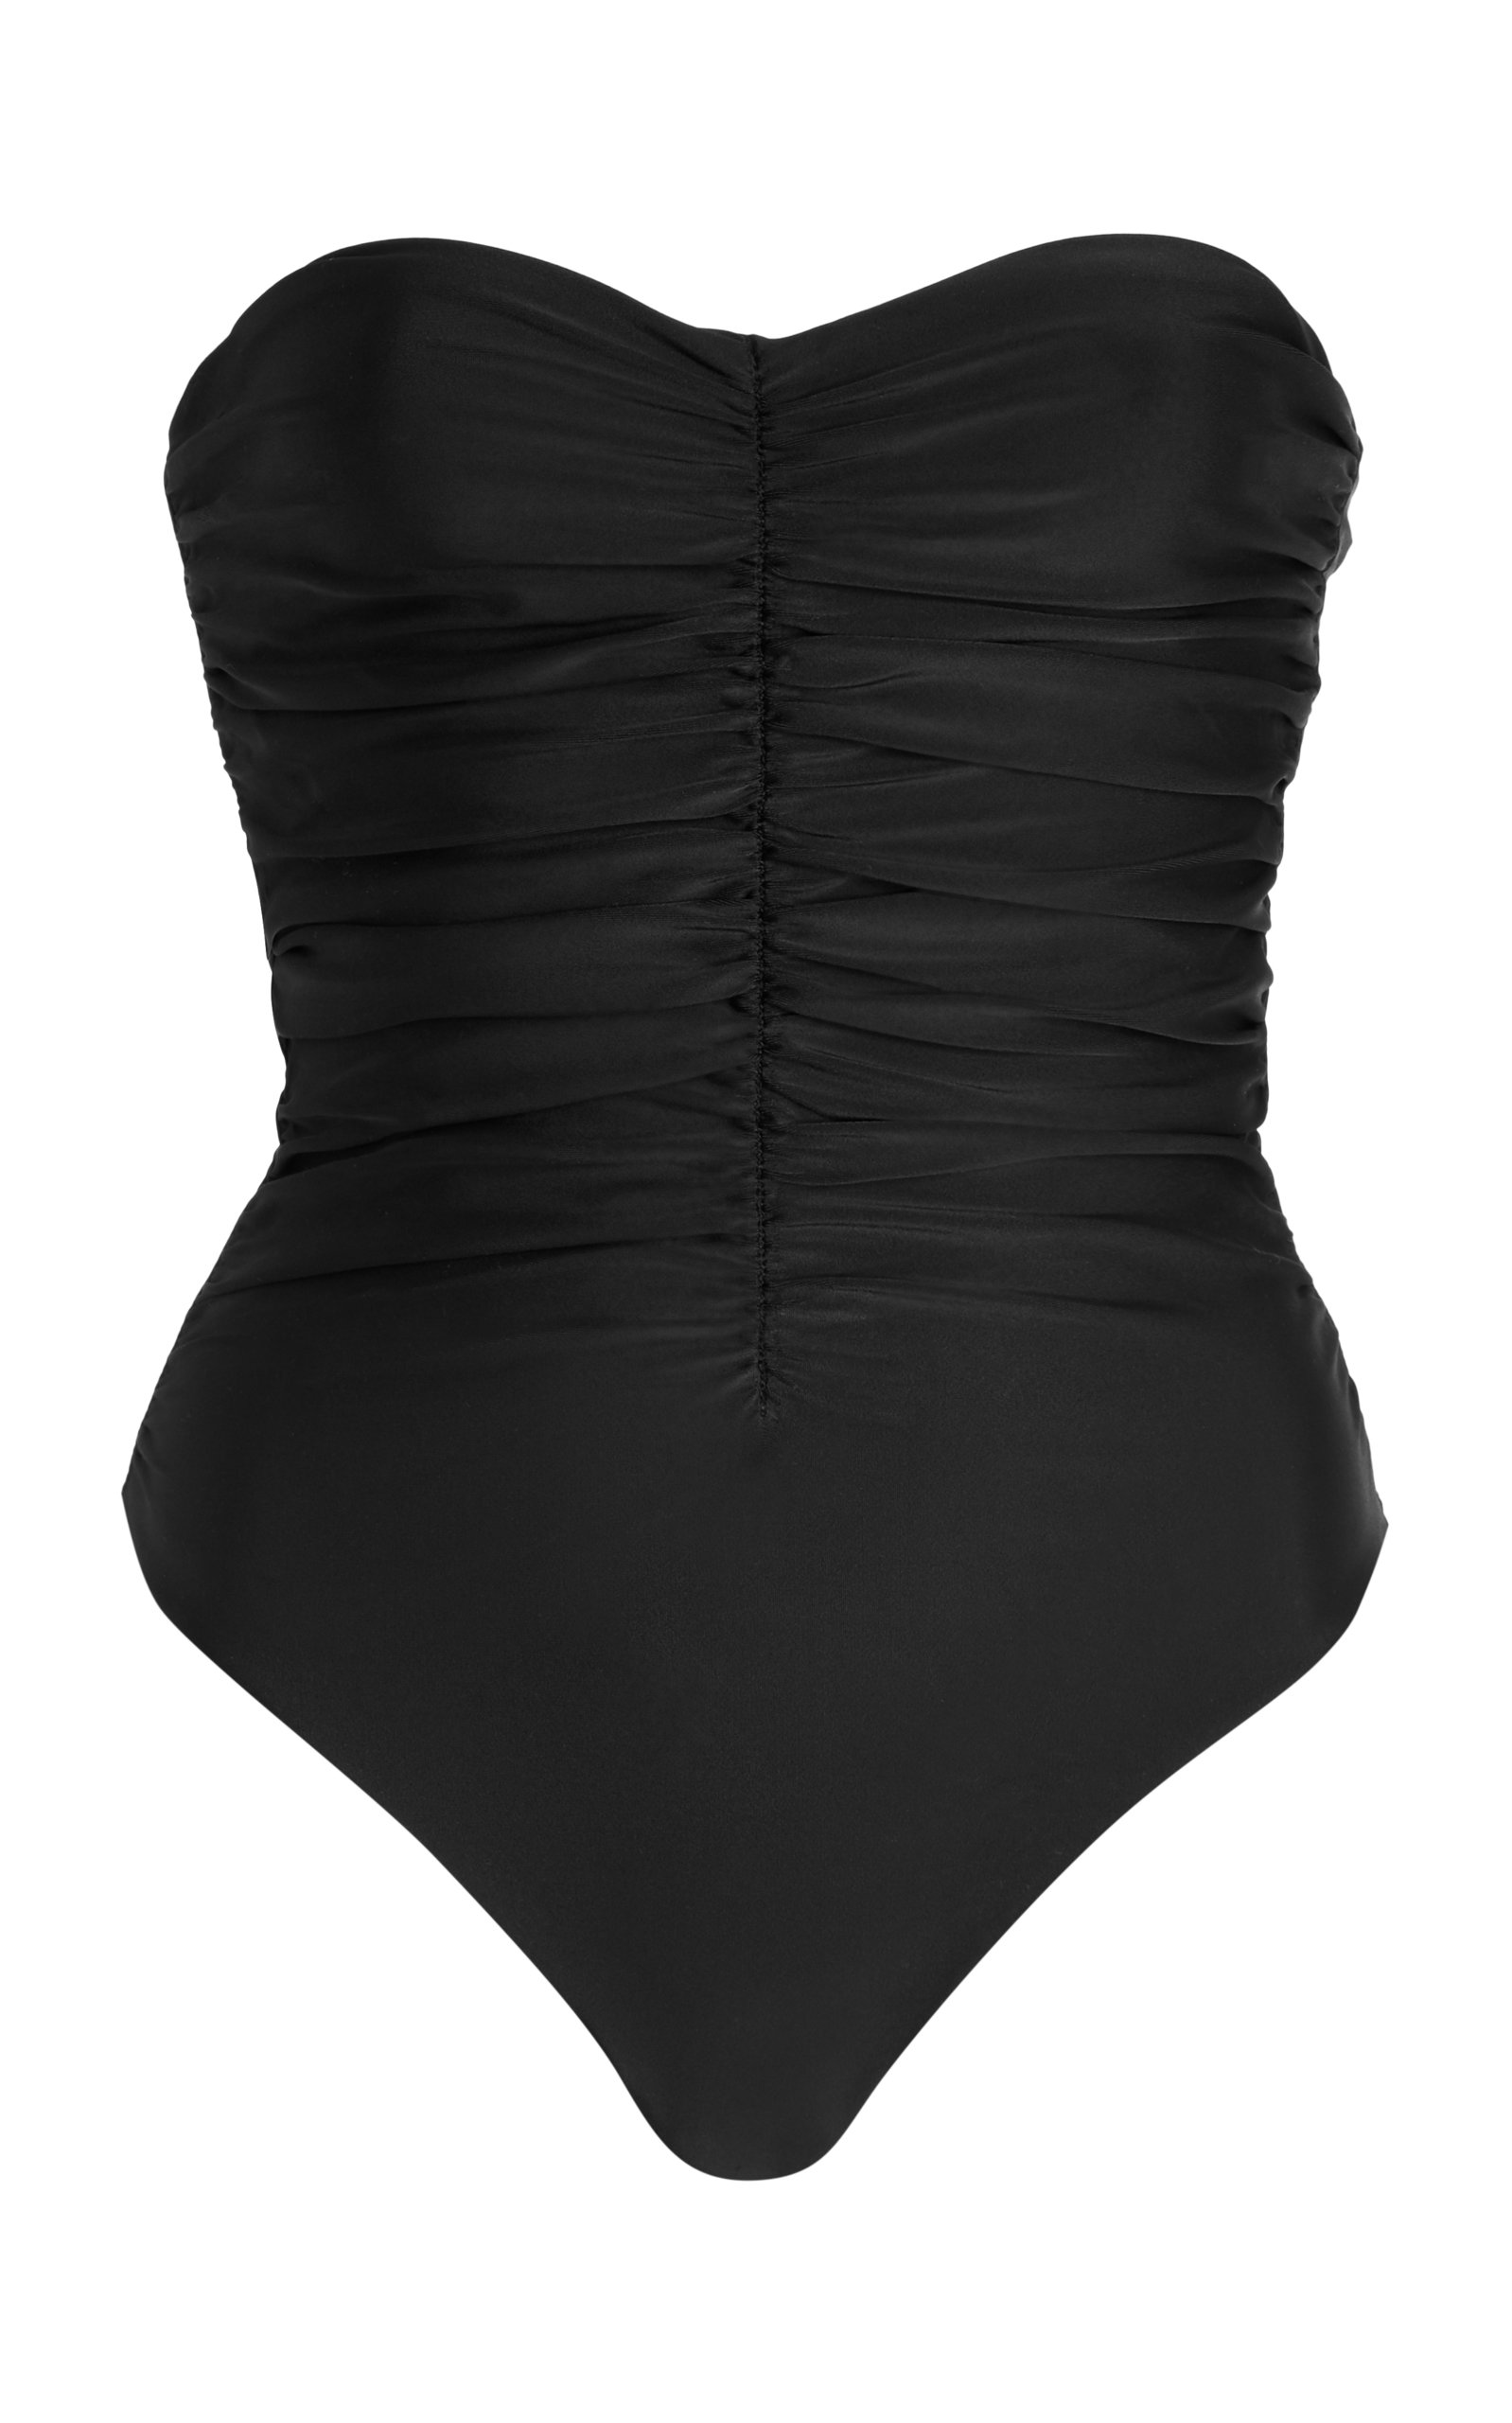 JADE SWIM - Women's Yara Strapless One-Piece Swimsuit - Black - XS - Moda Operandi